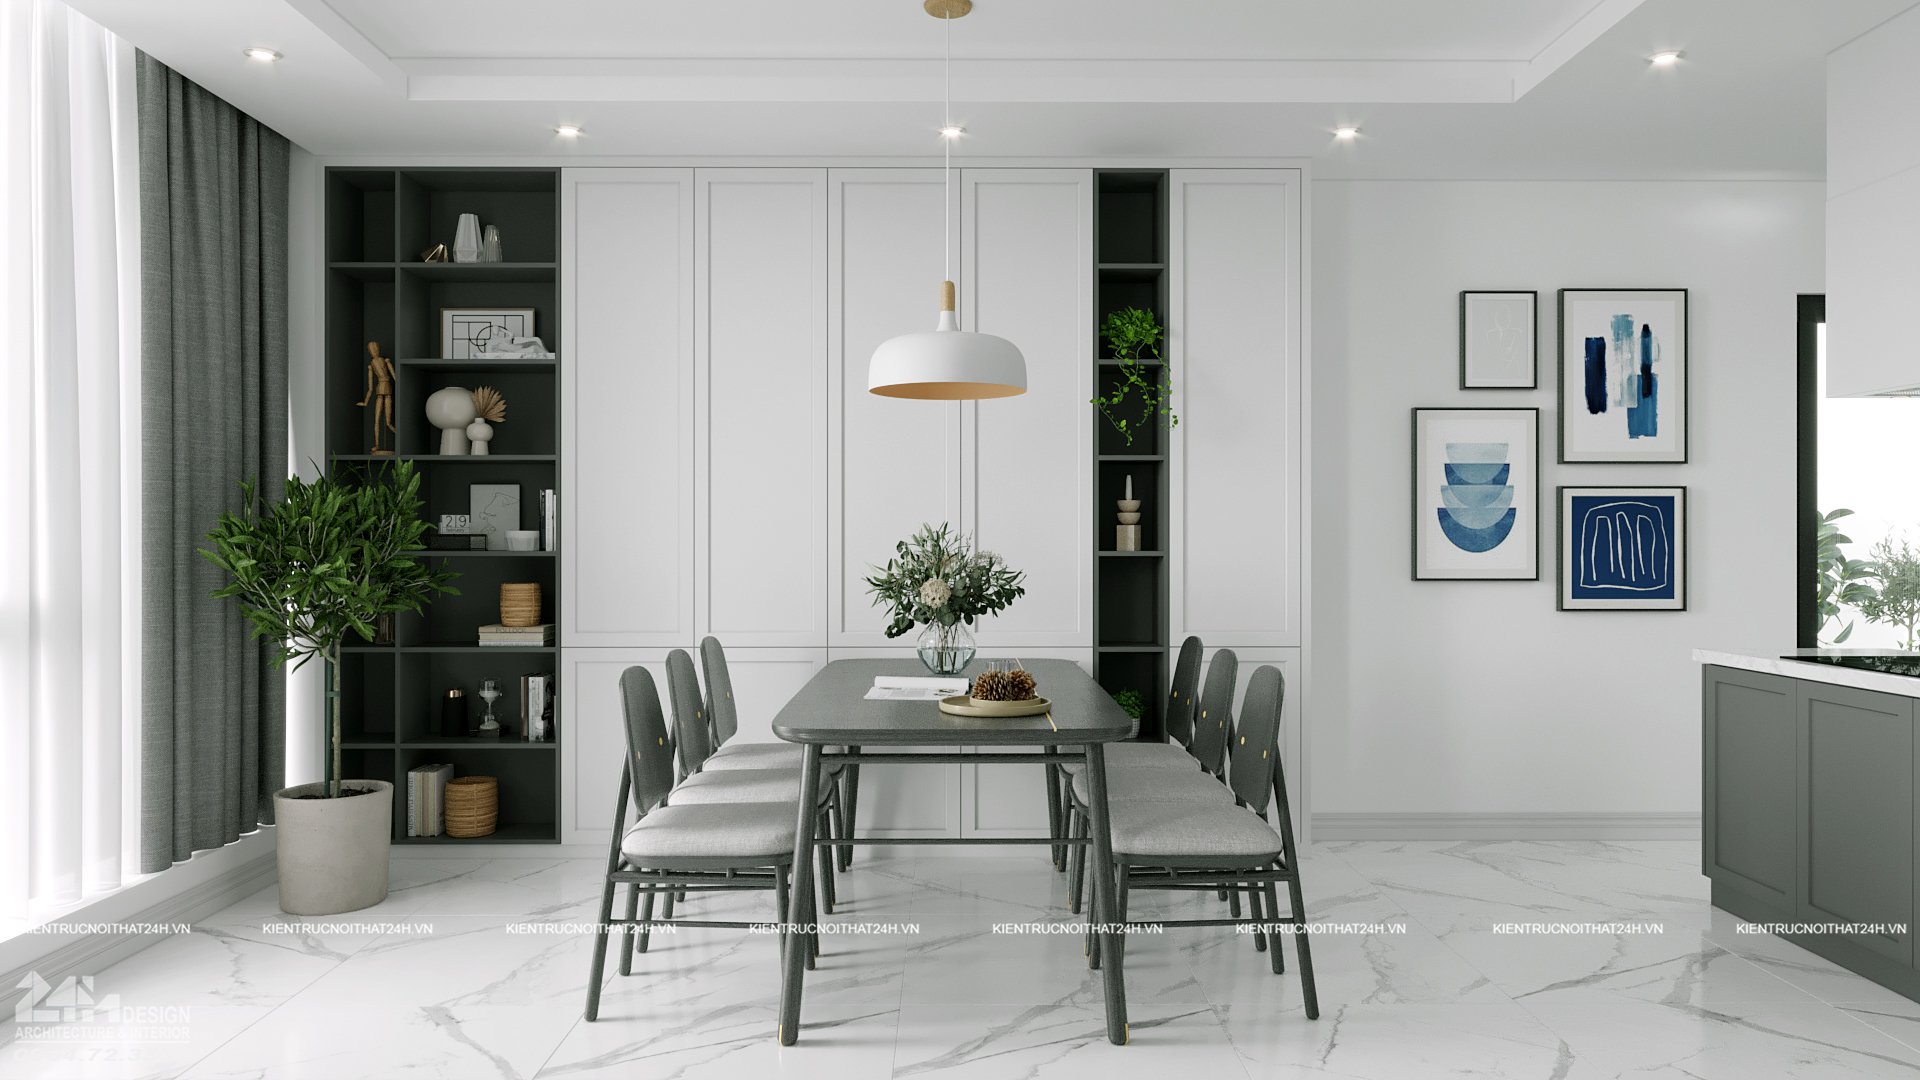 Ở phòng bếp, thiết kế Scandinavian với những chiếc bộ bàn ghế ăn có thể tháo rời sành điệu này giữ cho chỗ ngồi luôn mới và sạch sẽ quanh năm.